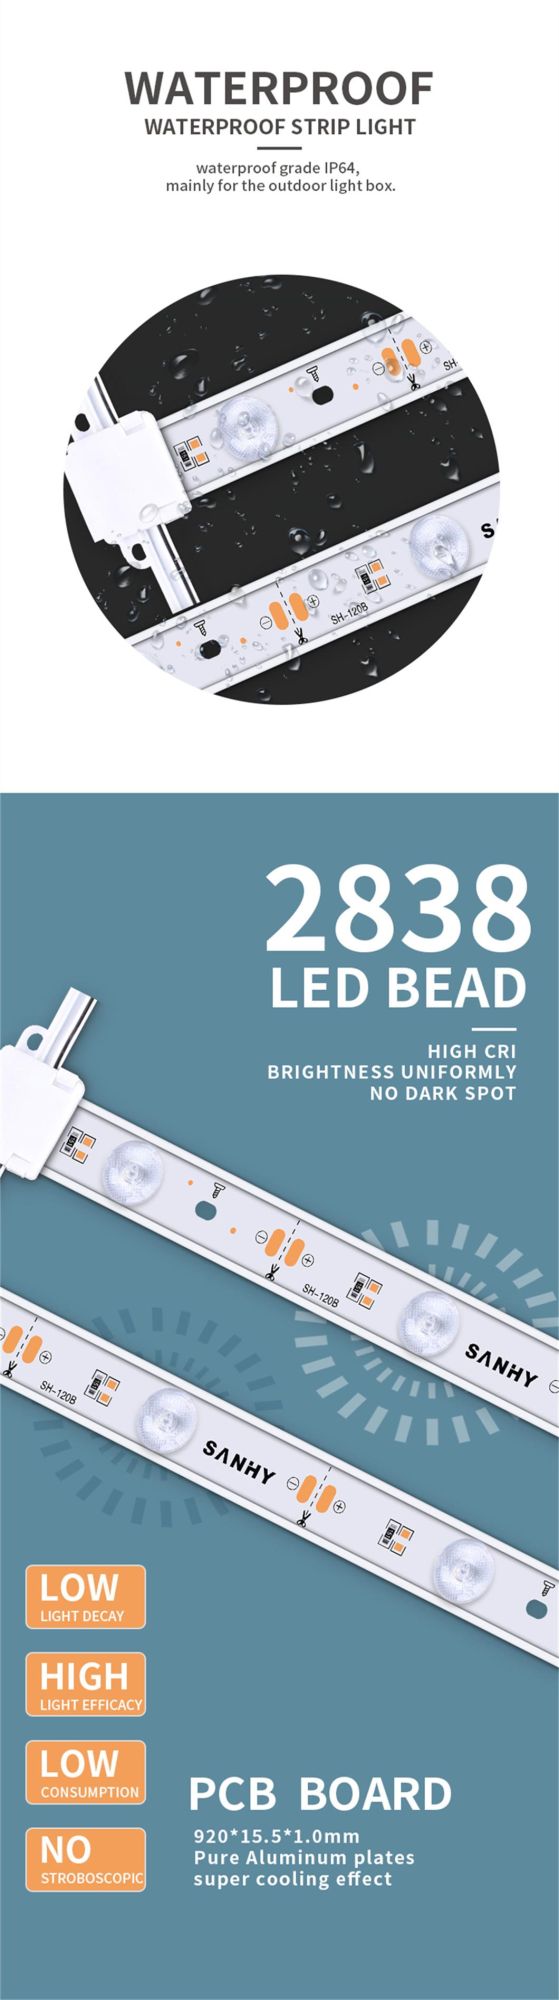 Advertising Light Box Built-in LED Strip Light